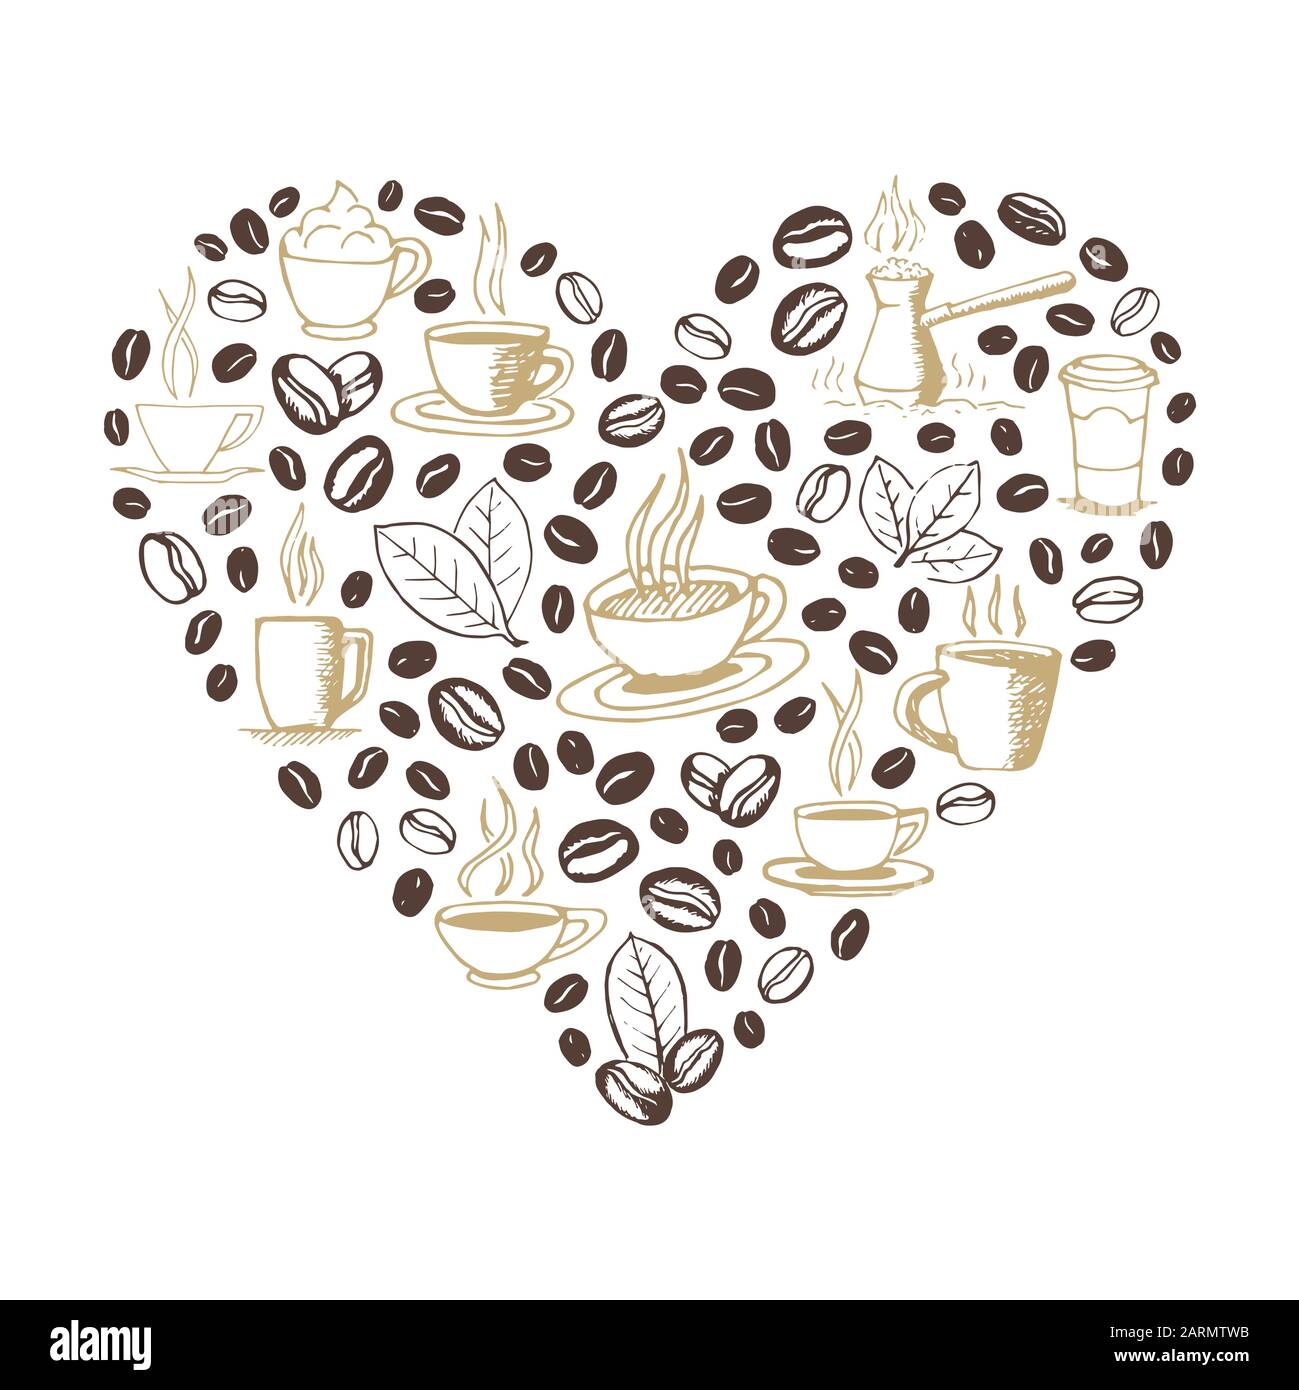 Forma de corazón rellena con garabatos de café dibujados a mano aislados sobre fondo blanco. Símbolos de taza de café, cezve, frijoles y hojas. Vector croquizado eps8 Ilustración del Vector